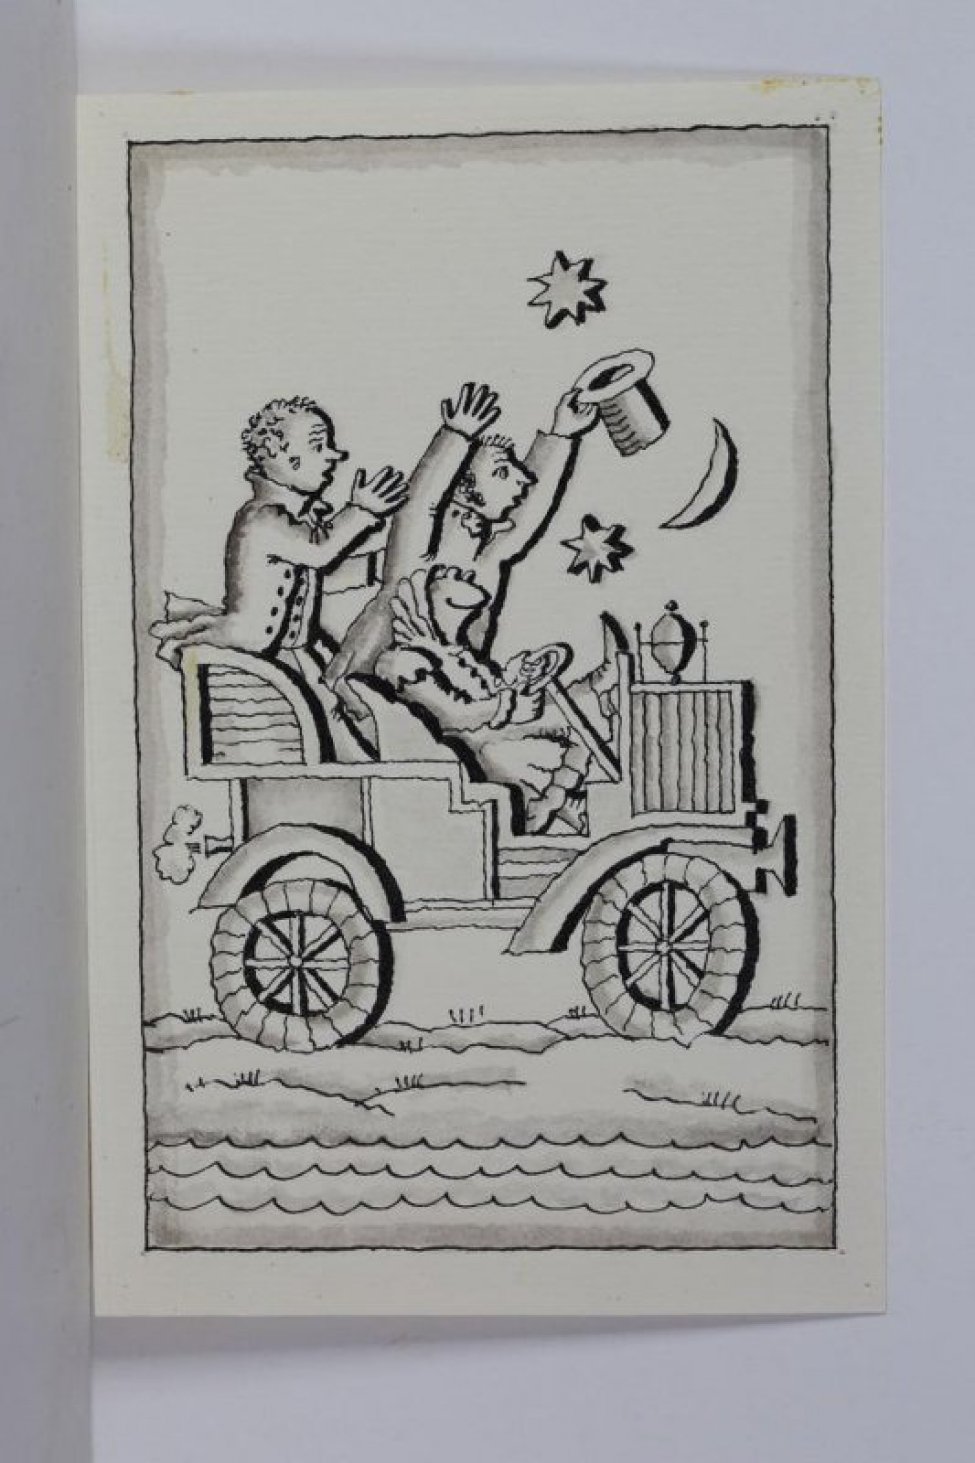 Стилизованное изображение автомобиля за рулем которого, сидит лягушка в женском платье. Позади нее - двое мужчин с поднятыми вверх руками.